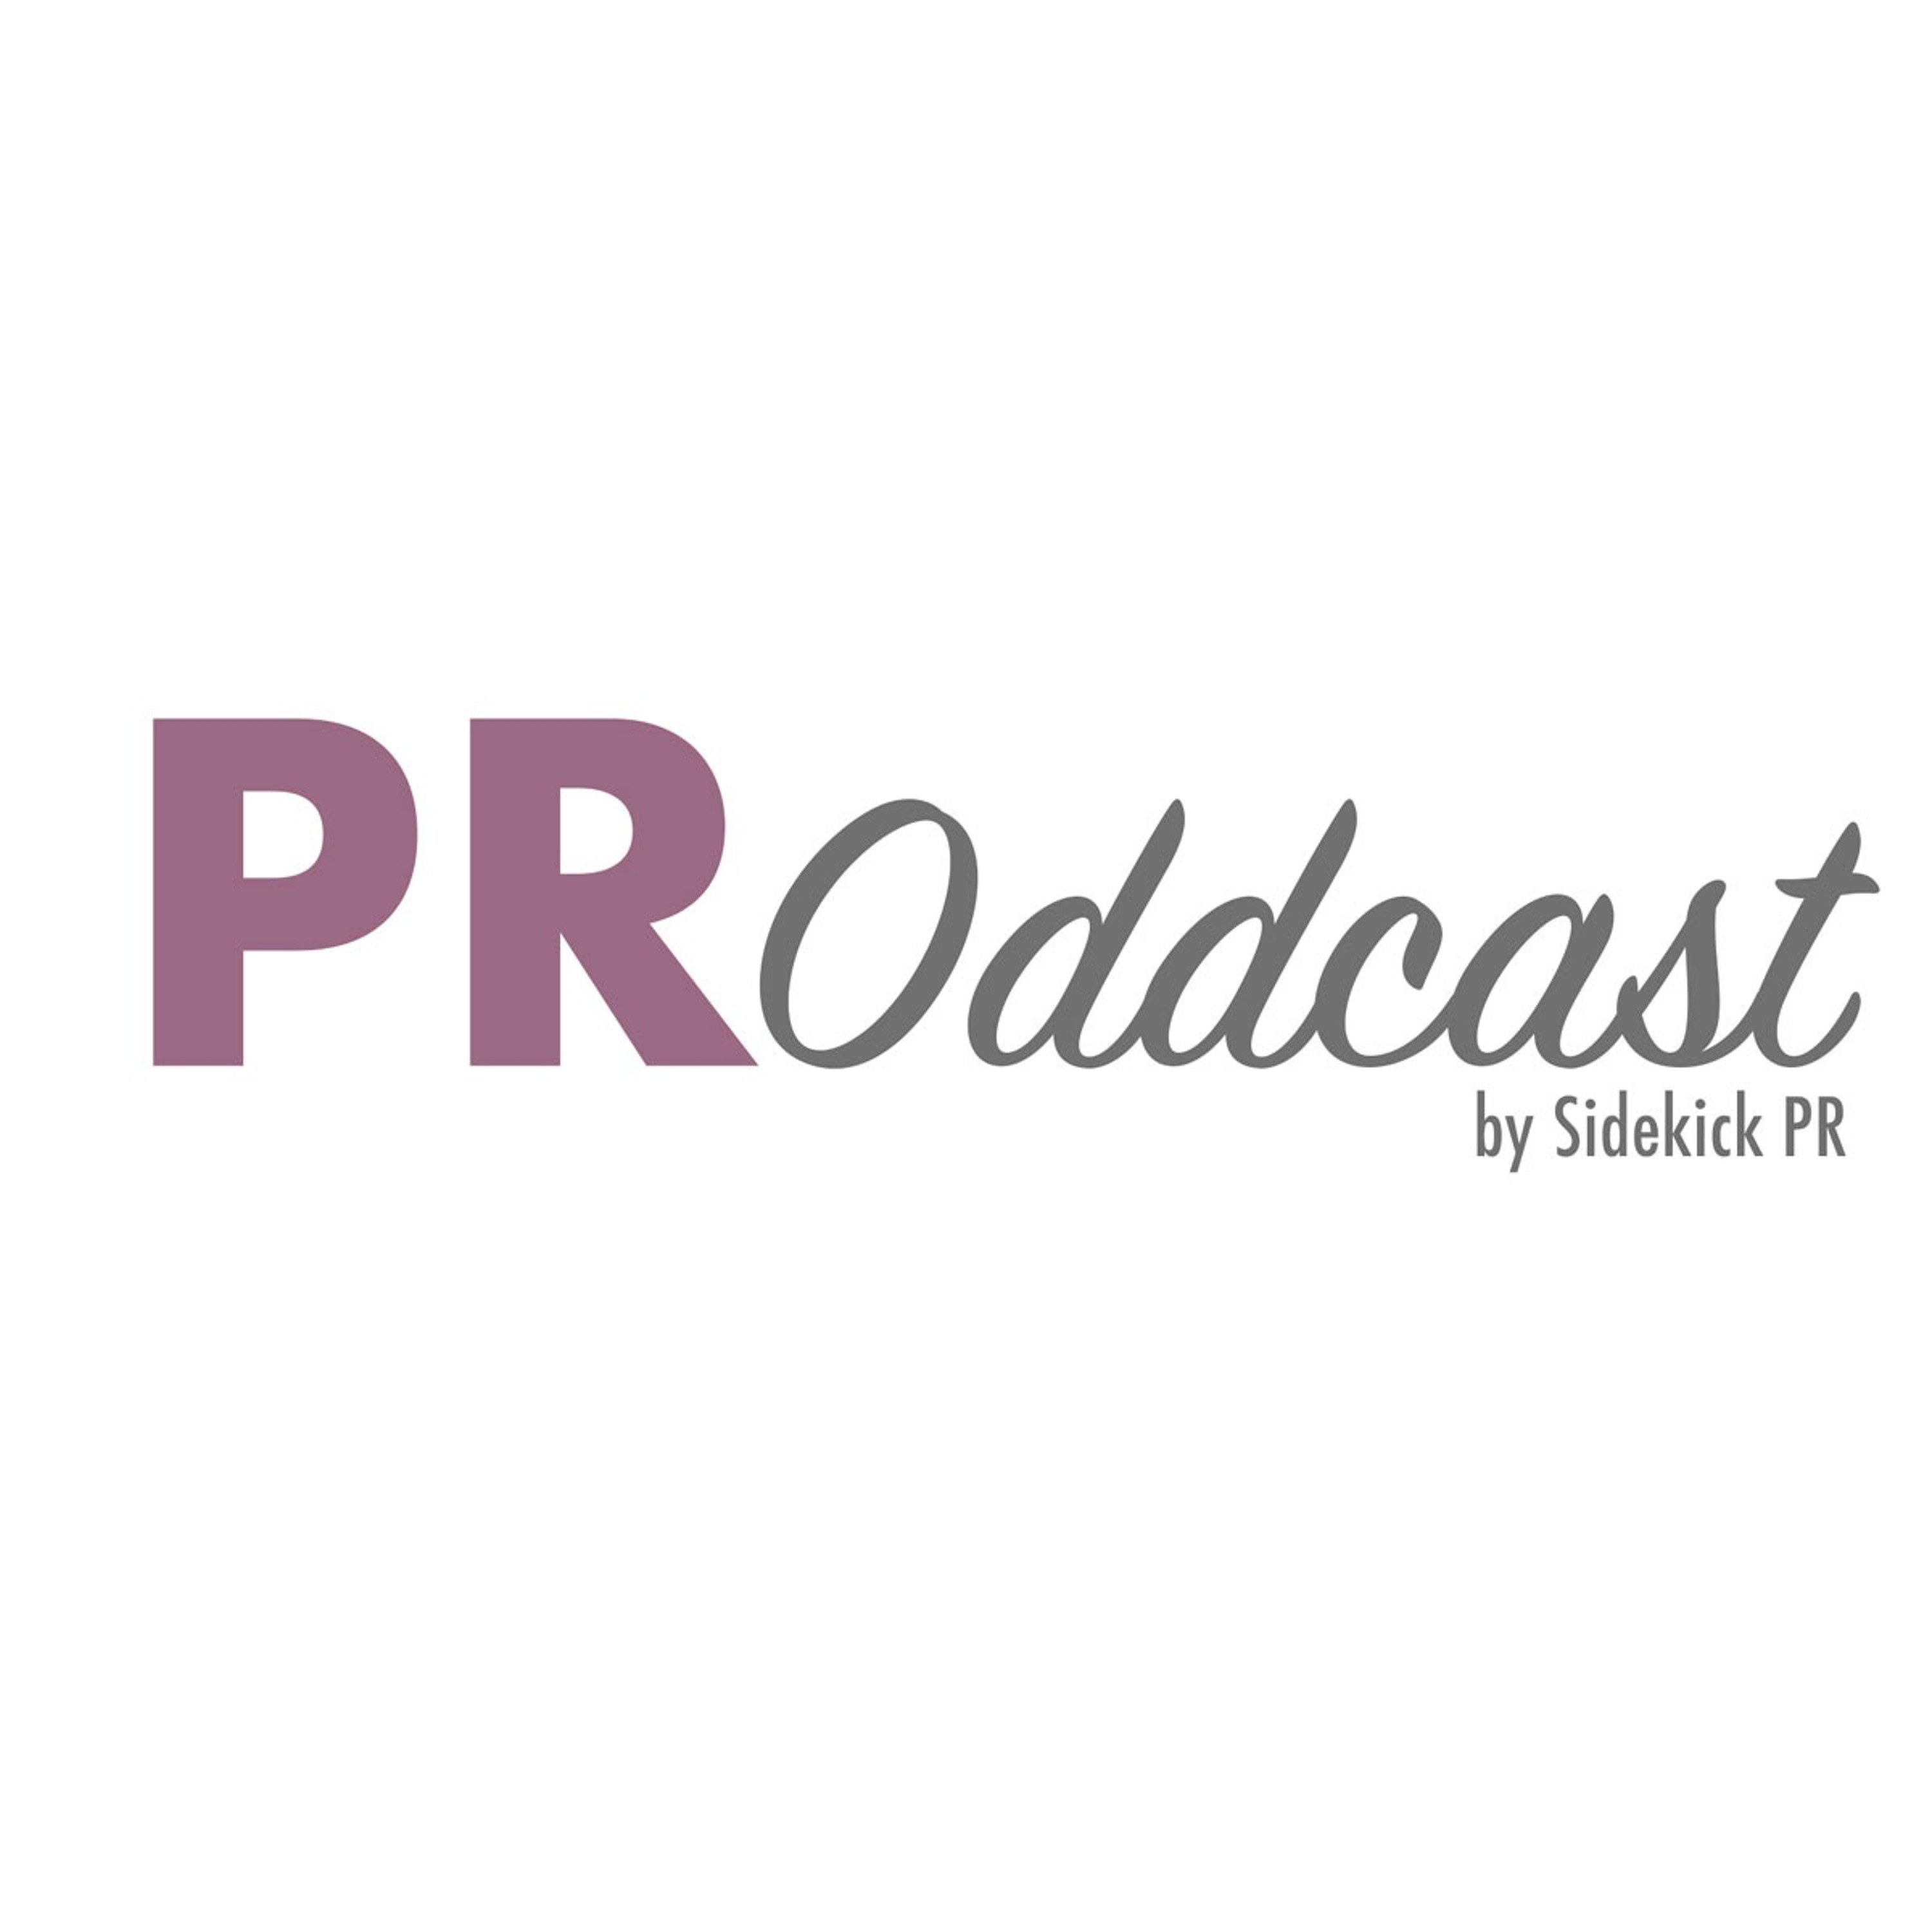 PR Oddcast – by Sidekick PR (Episode 3)